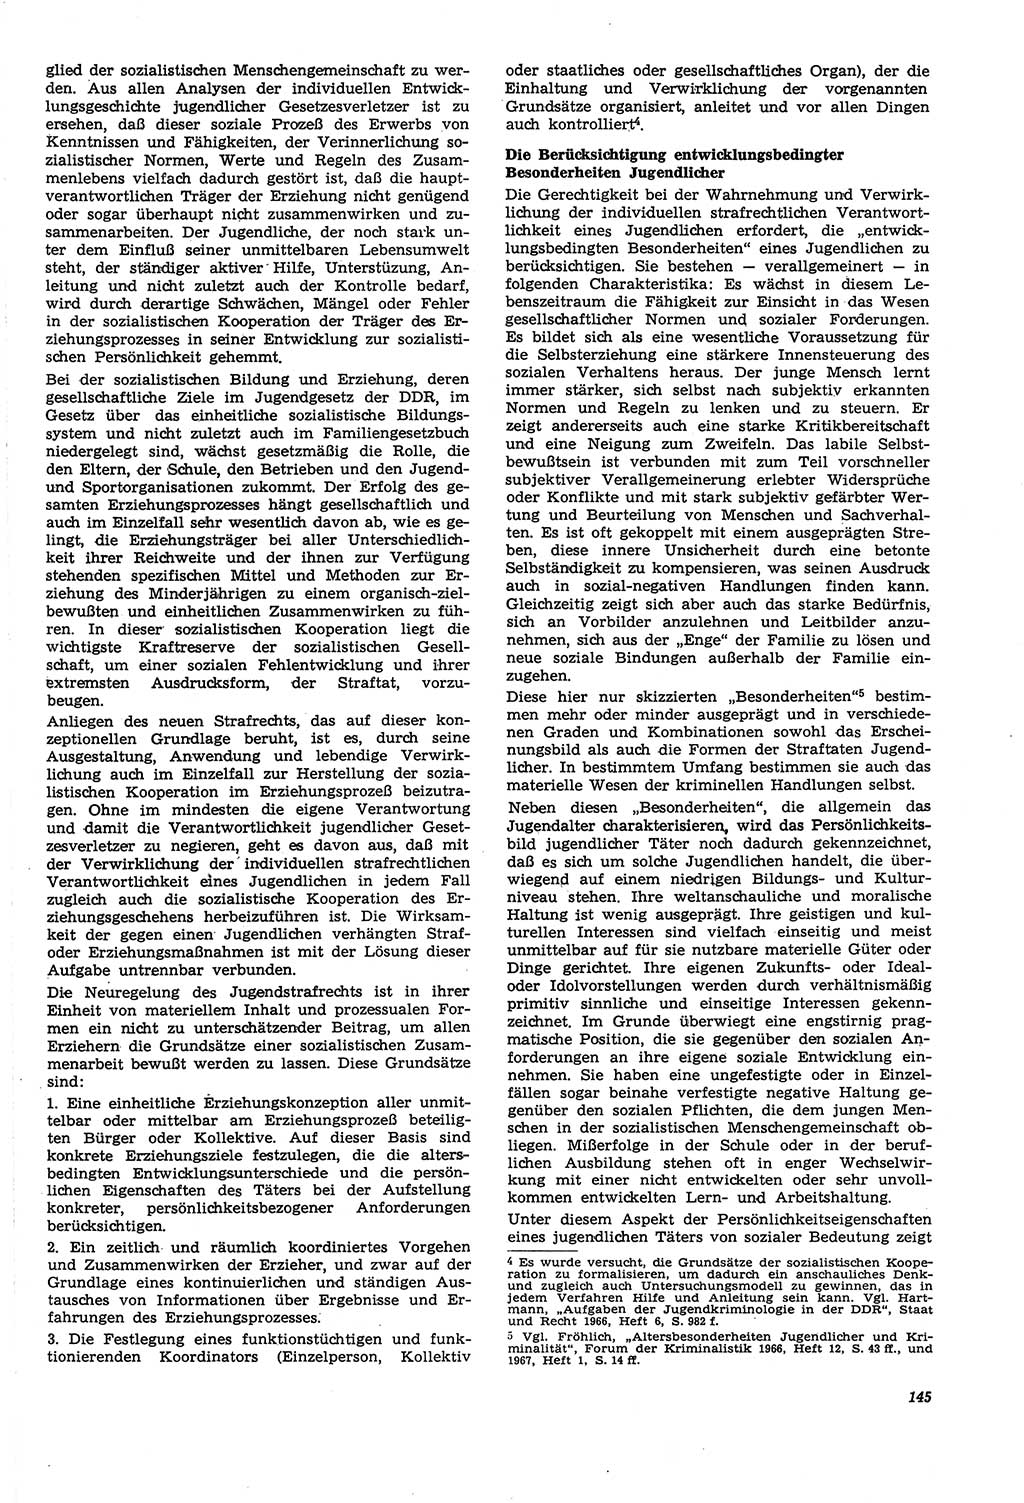 Neue Justiz (NJ), Zeitschrift für Recht und Rechtswissenschaft [Deutsche Demokratische Republik (DDR)], 21. Jahrgang 1967, Seite 145 (NJ DDR 1967, S. 145)